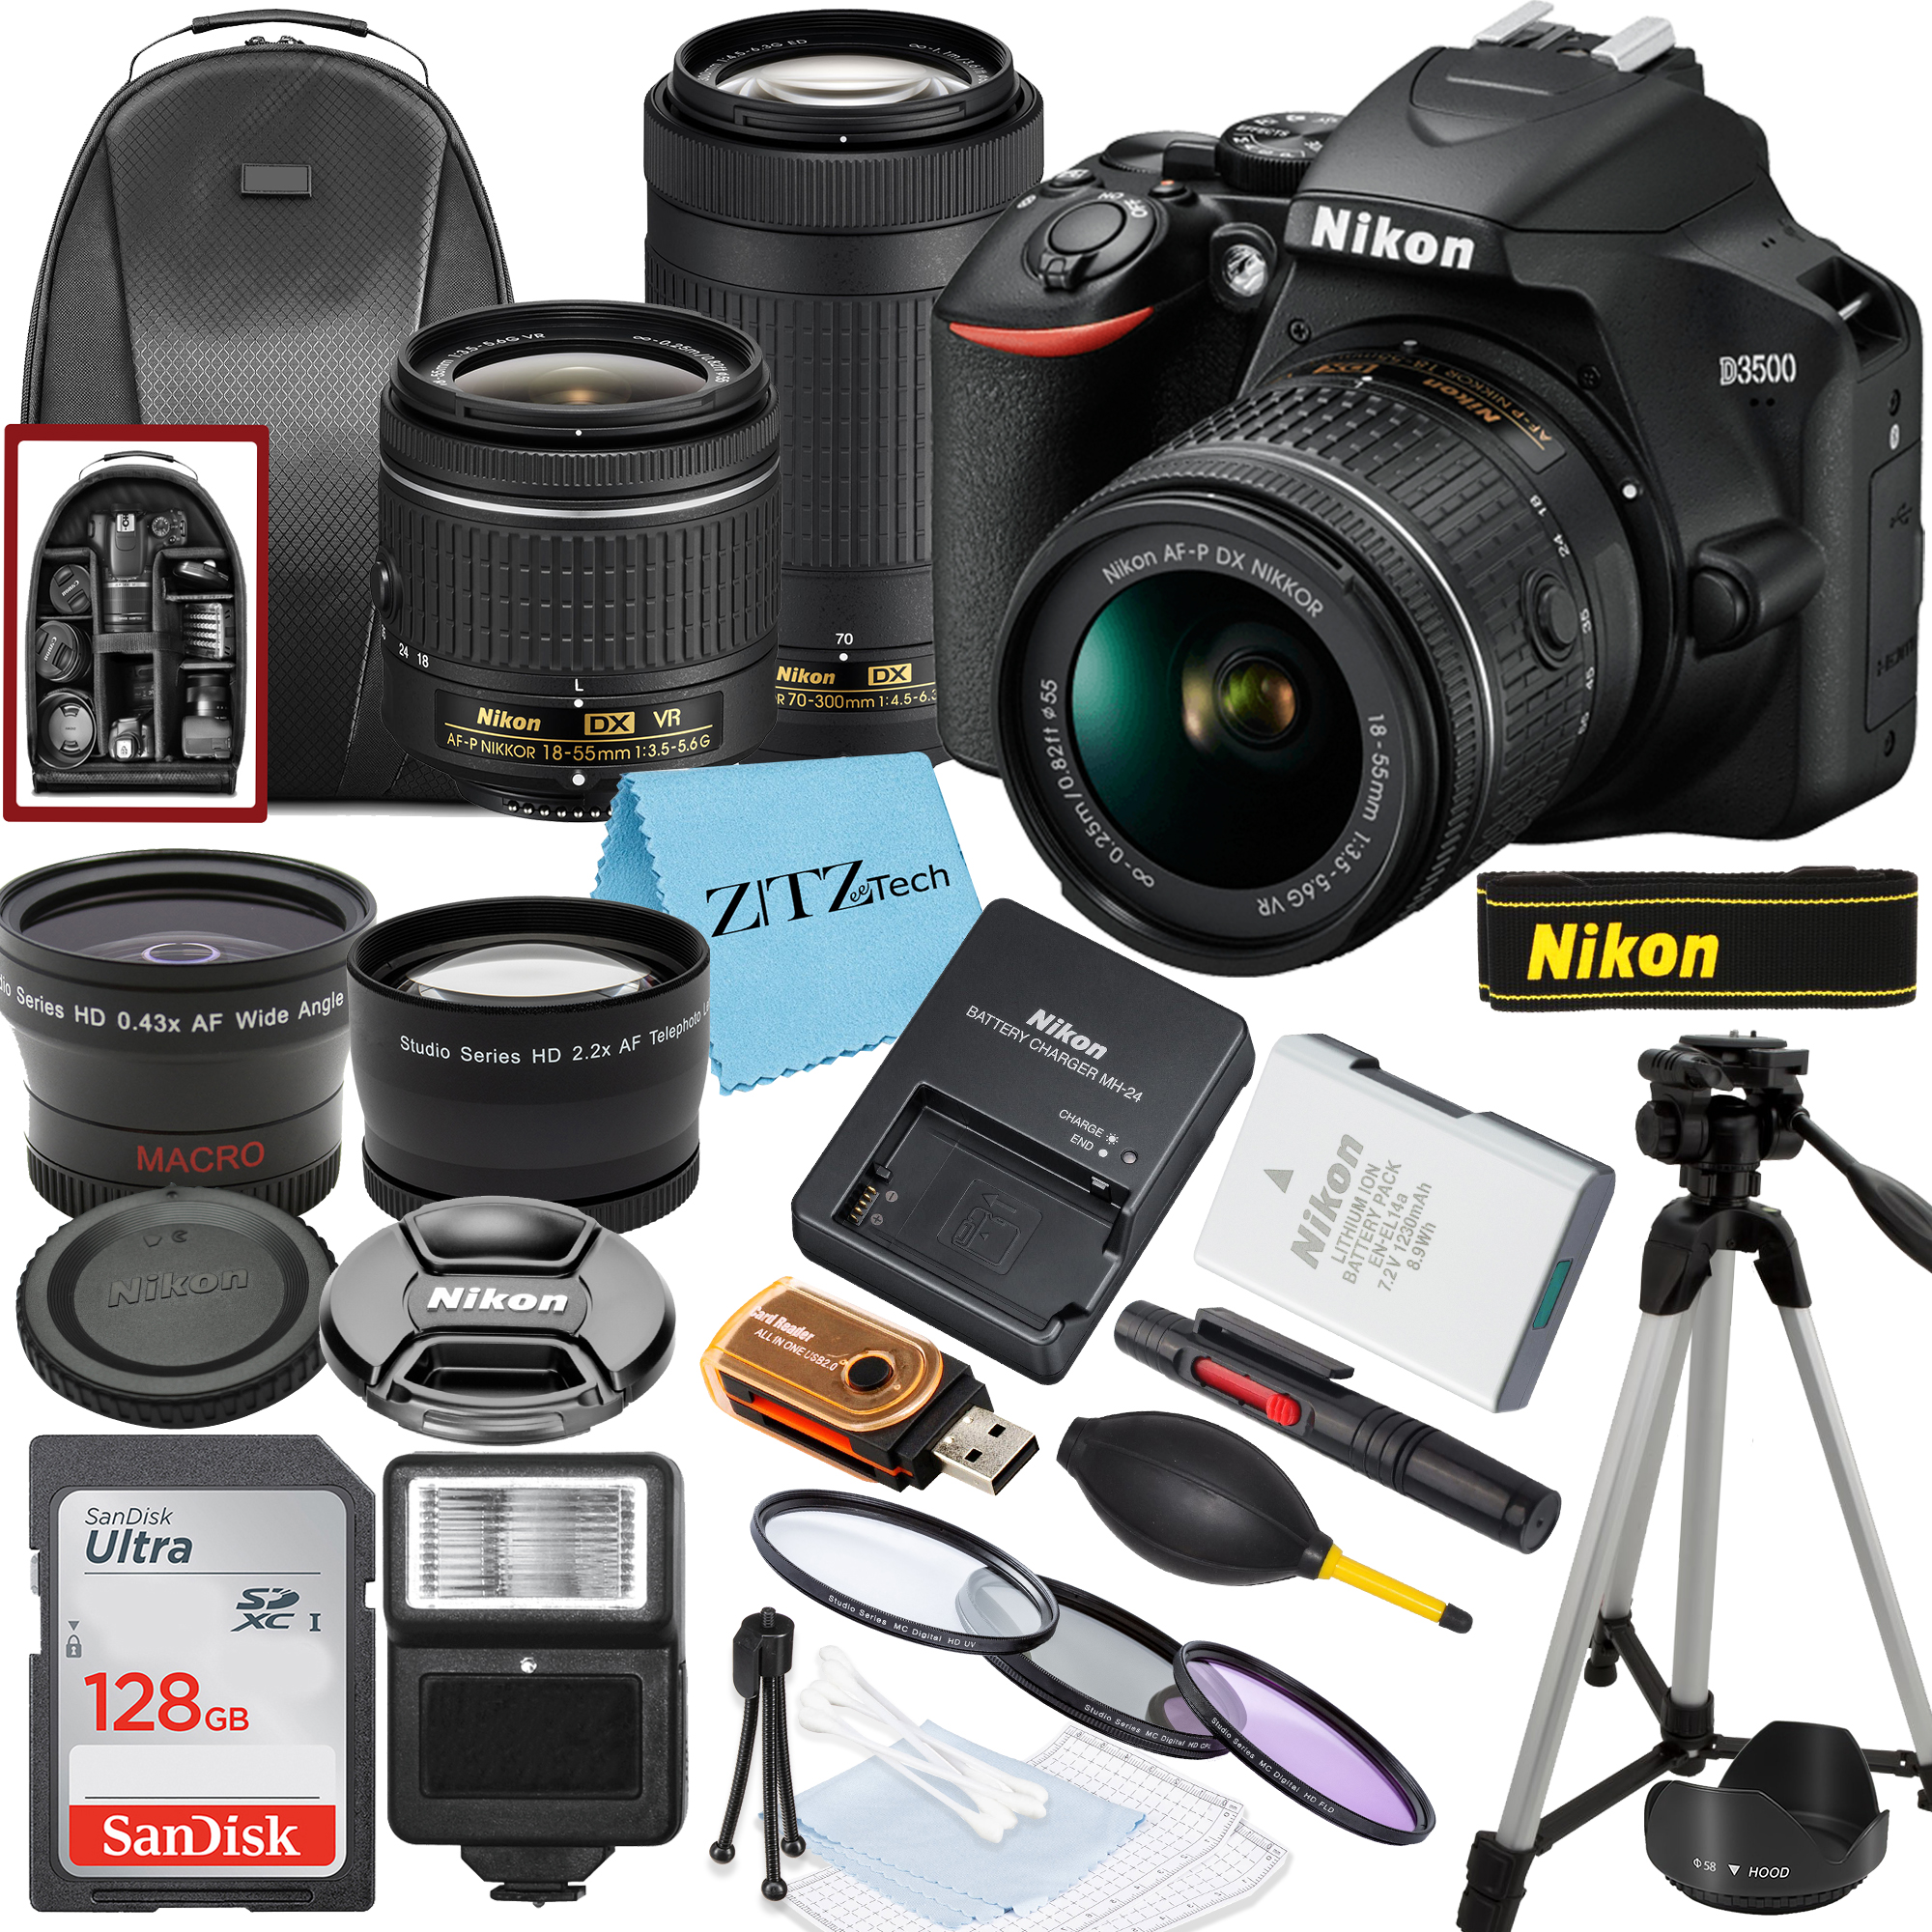 Nikon D3500 DSLR Camera with NIKKOR 18-55mm, 70-300mm Lens, SanDisk 128GB Memory, Tripod, Backpack and ZeeTech Bundle